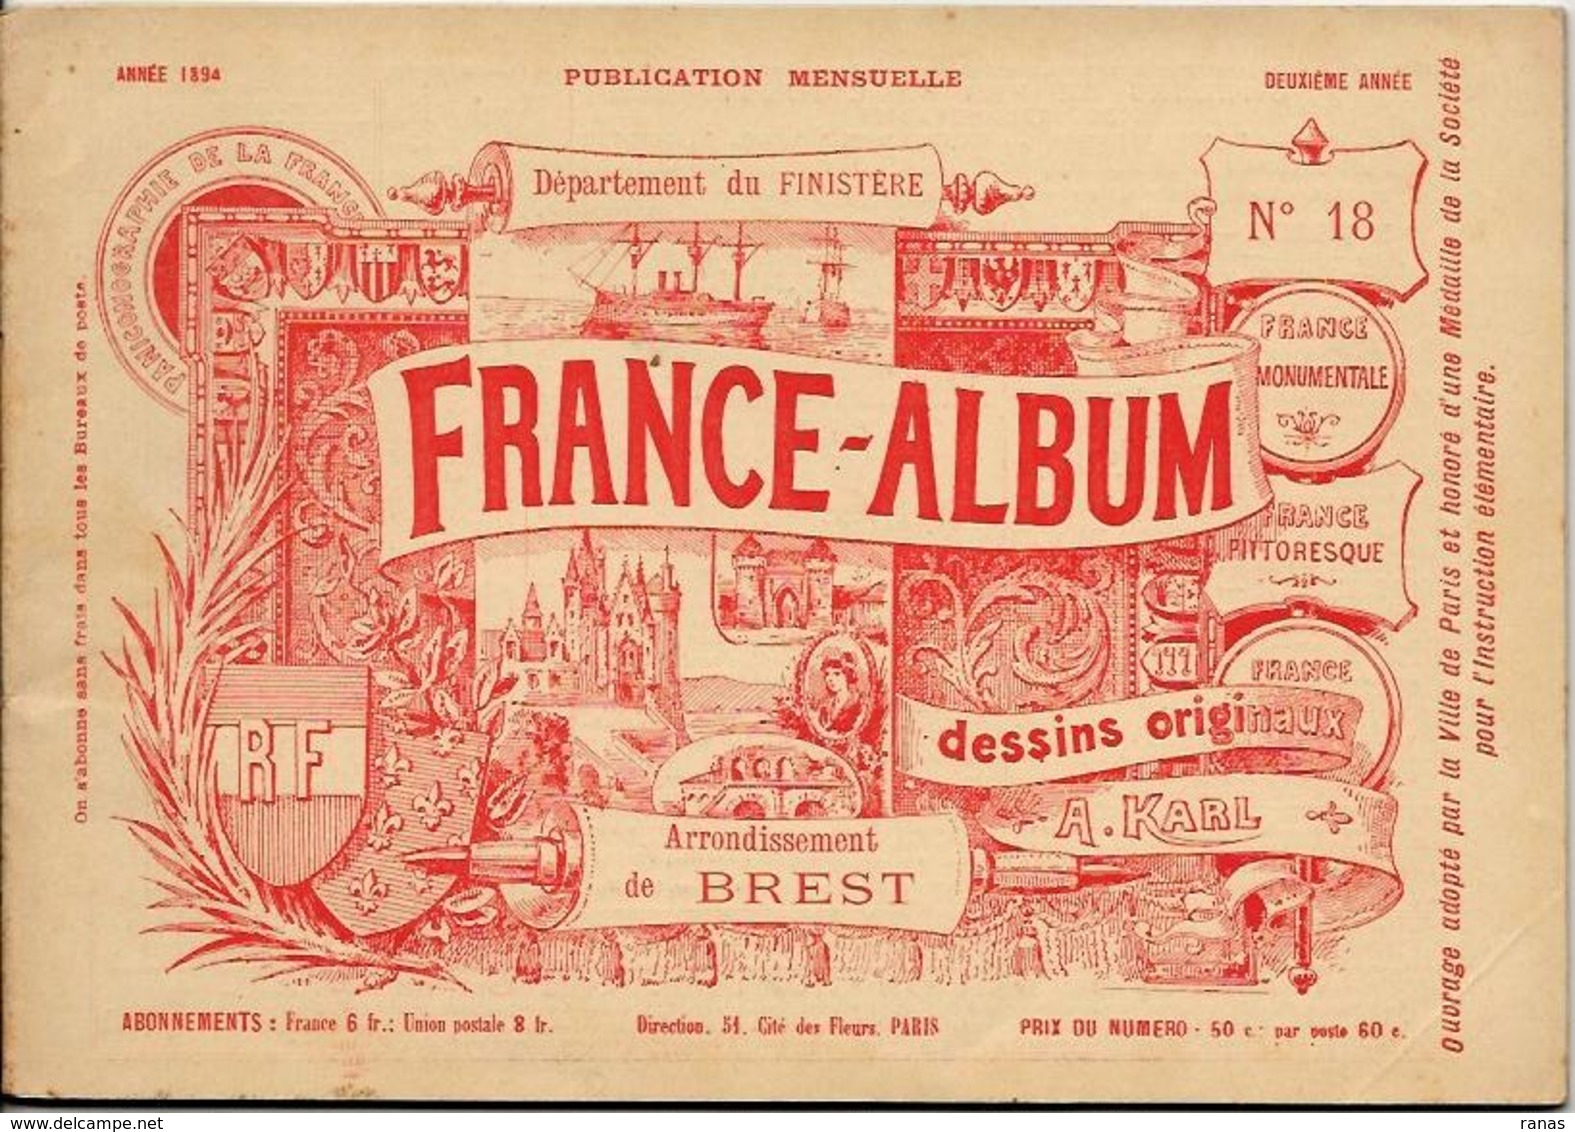 Finistère France Album De A. KARL, Carte Gravures Texte Publicités 1894 - Tourism Brochures